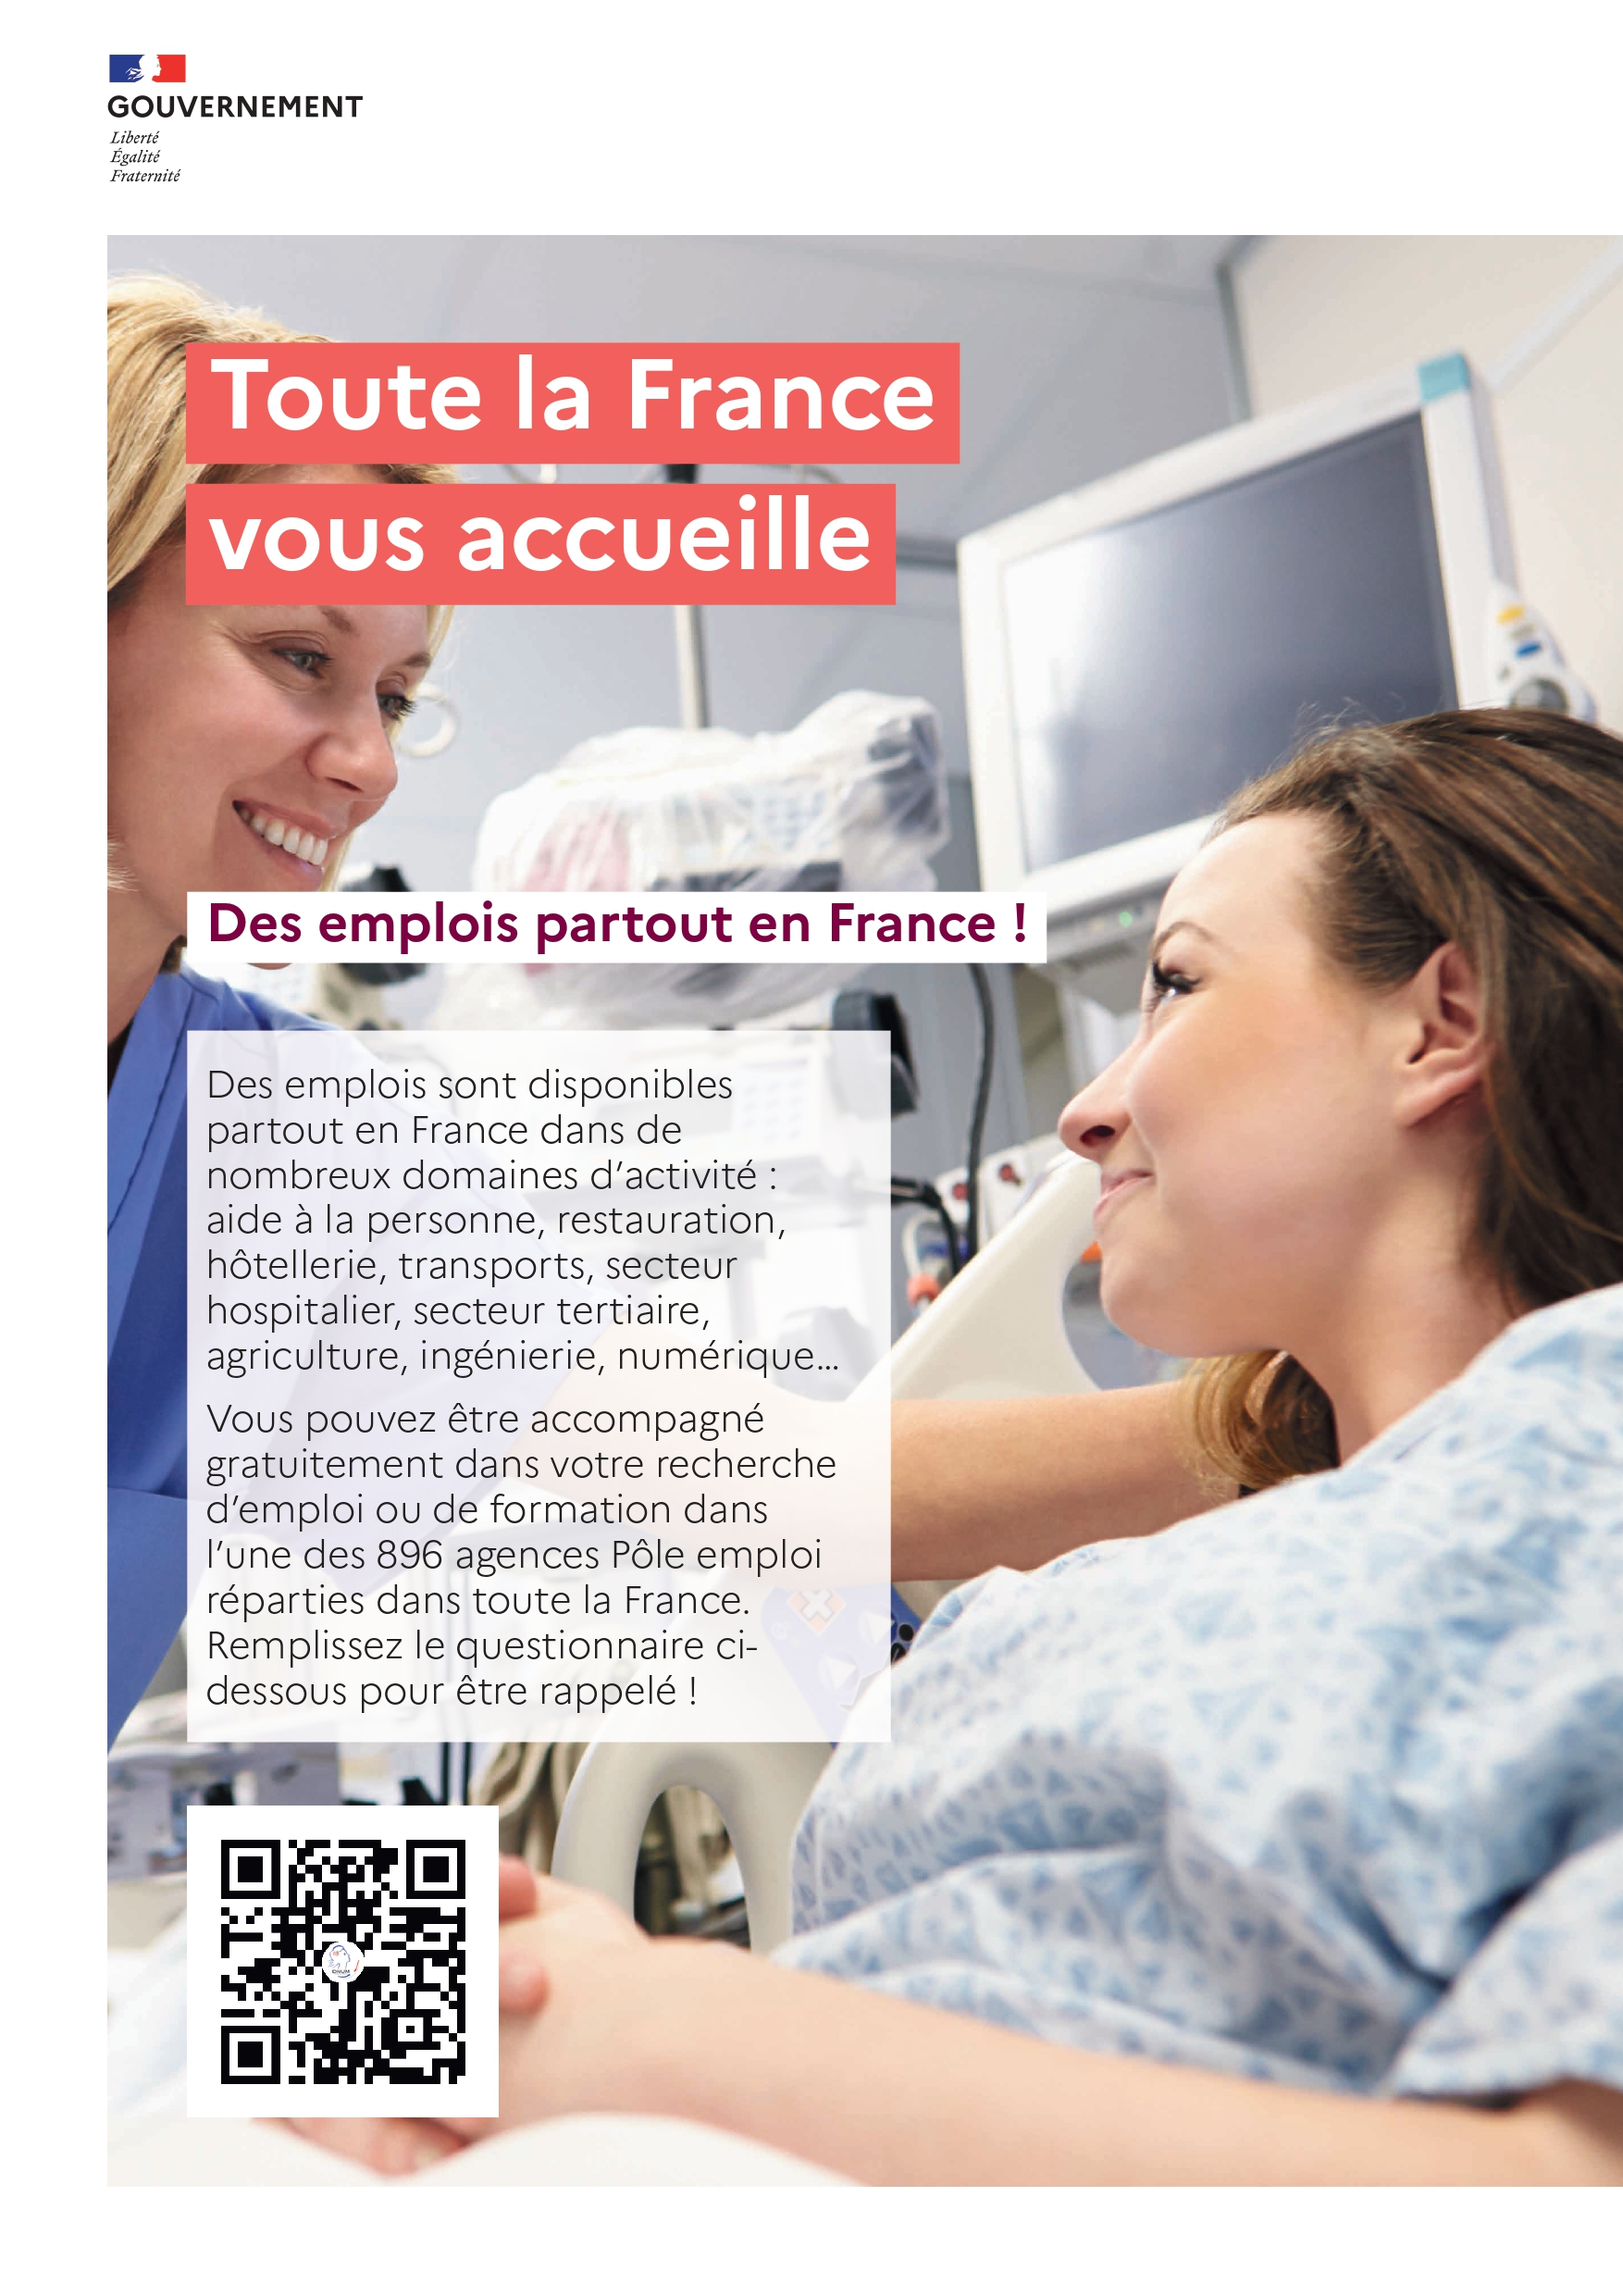 La France vous accueille • Des emplois partout en France ! 